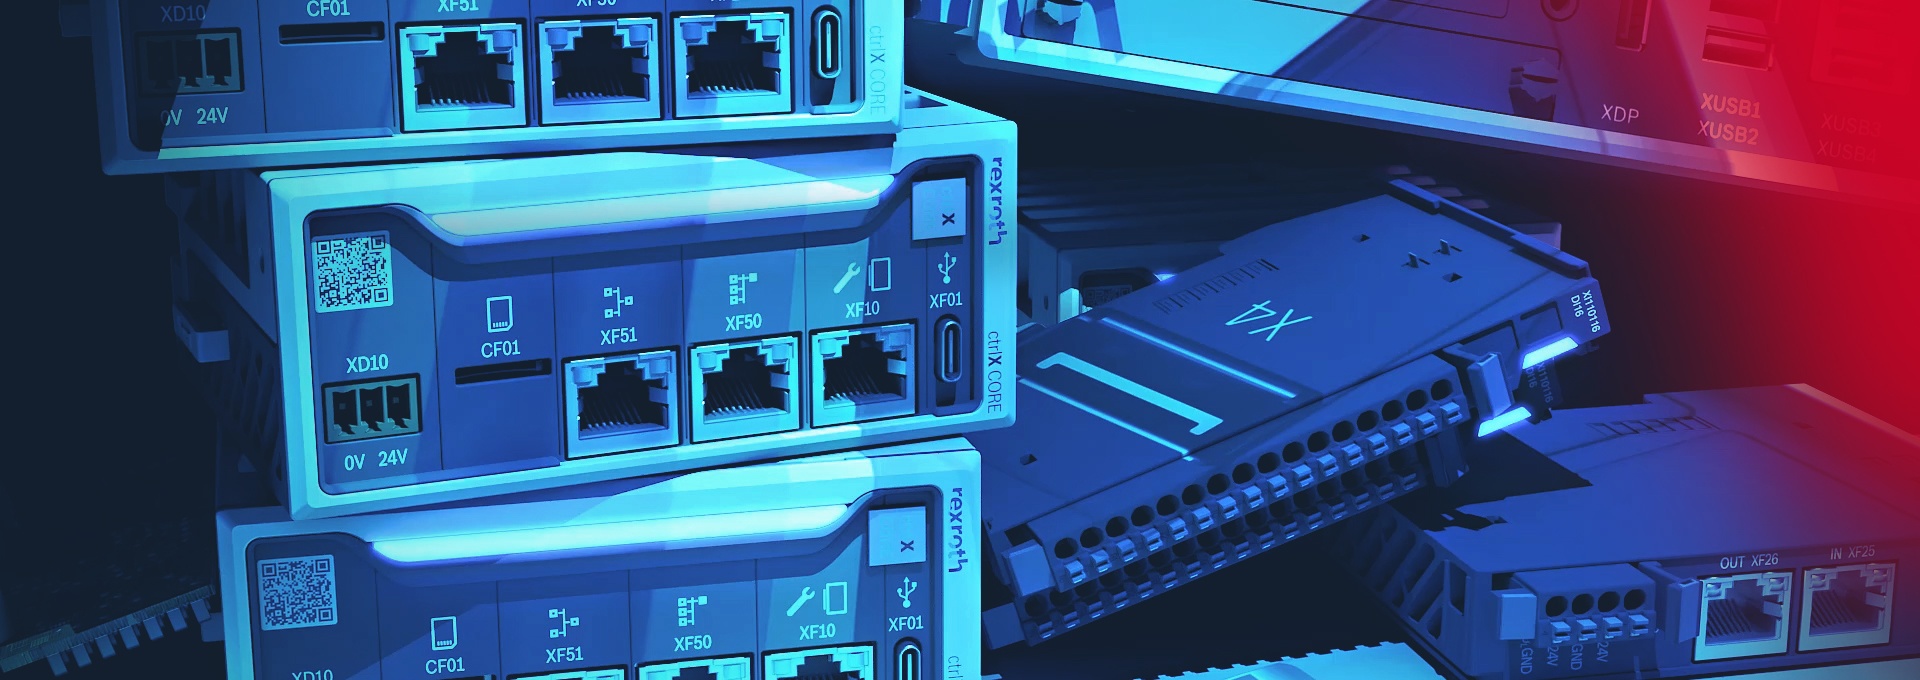 Obraz w kolorze niebieskim przedstawiający kilka komponentów ctrlX AUTOMATION. Między innymi sprzęt sterujący ctrlX CORE oraz komponenty I/O ctrlX I/O.